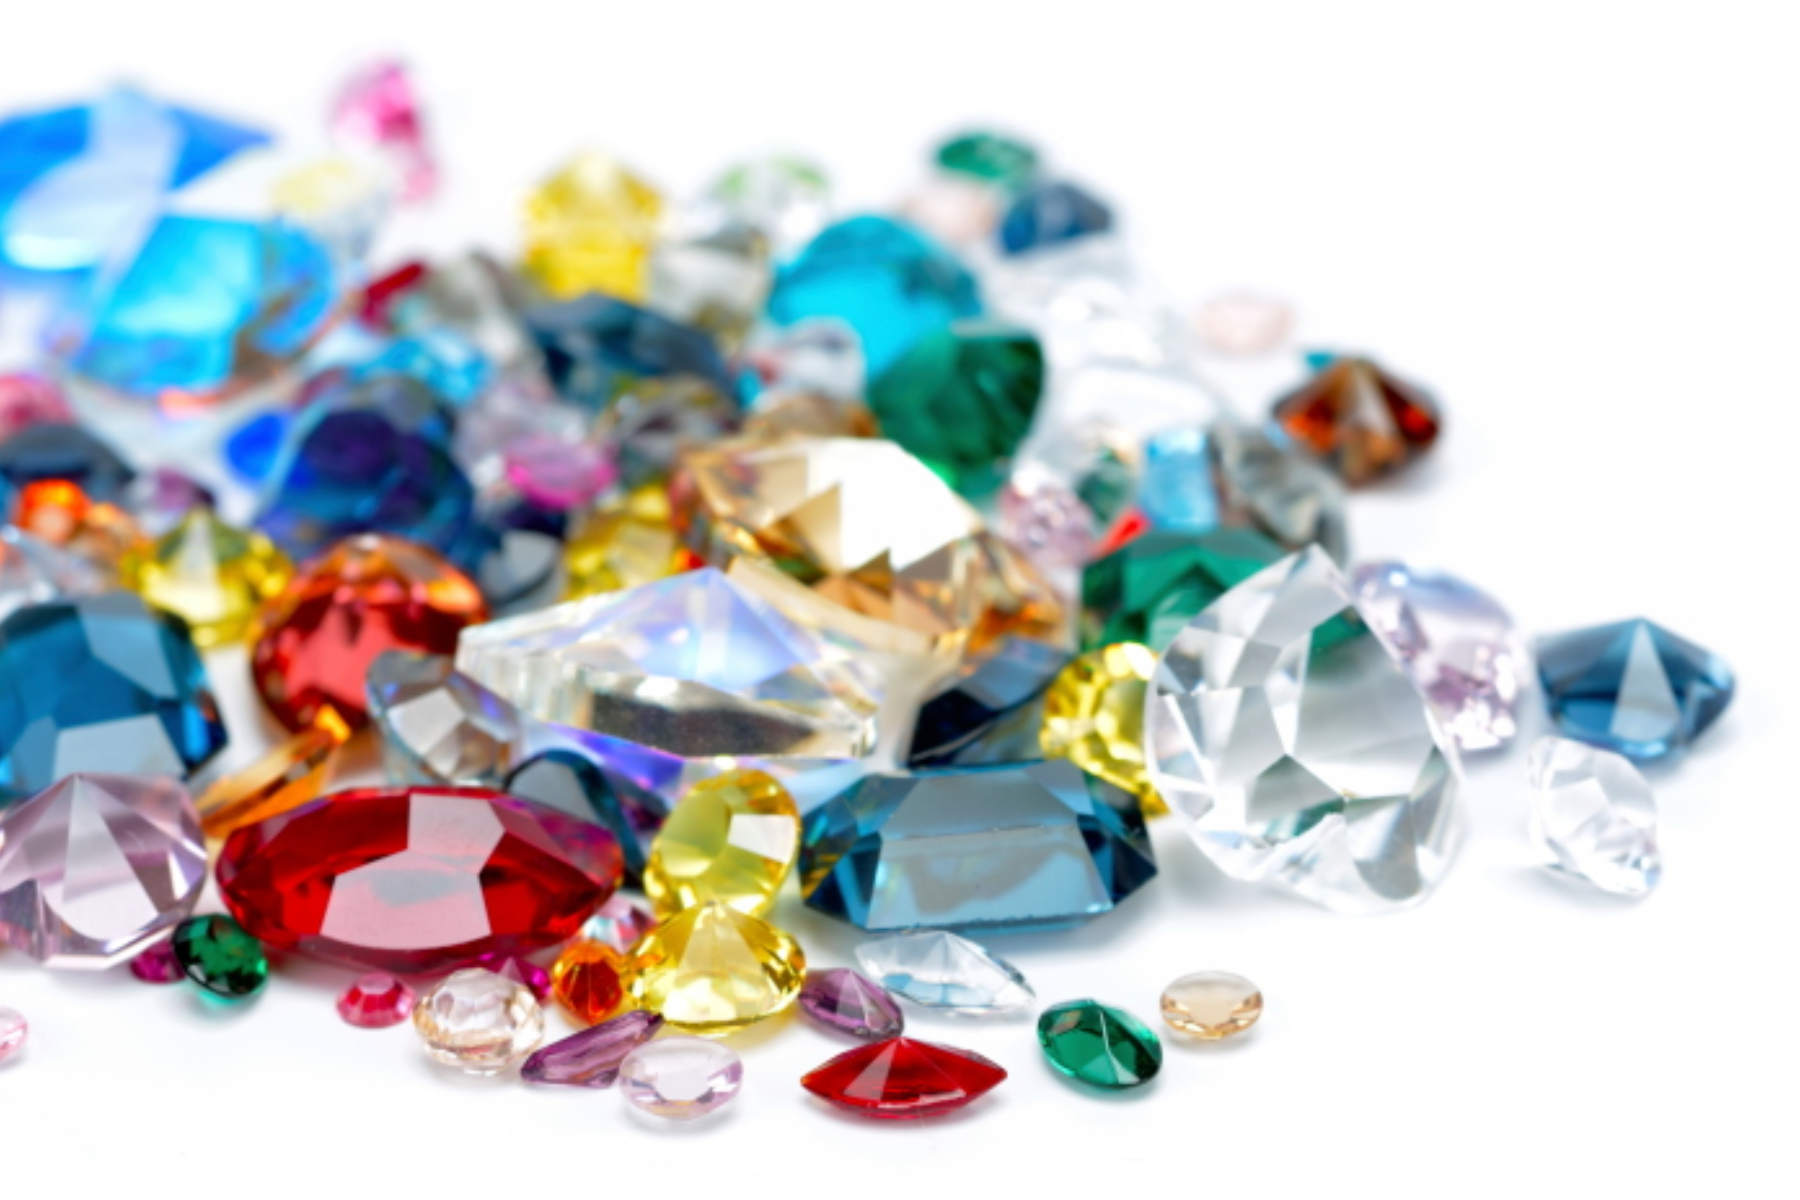 An assortment of precious stones